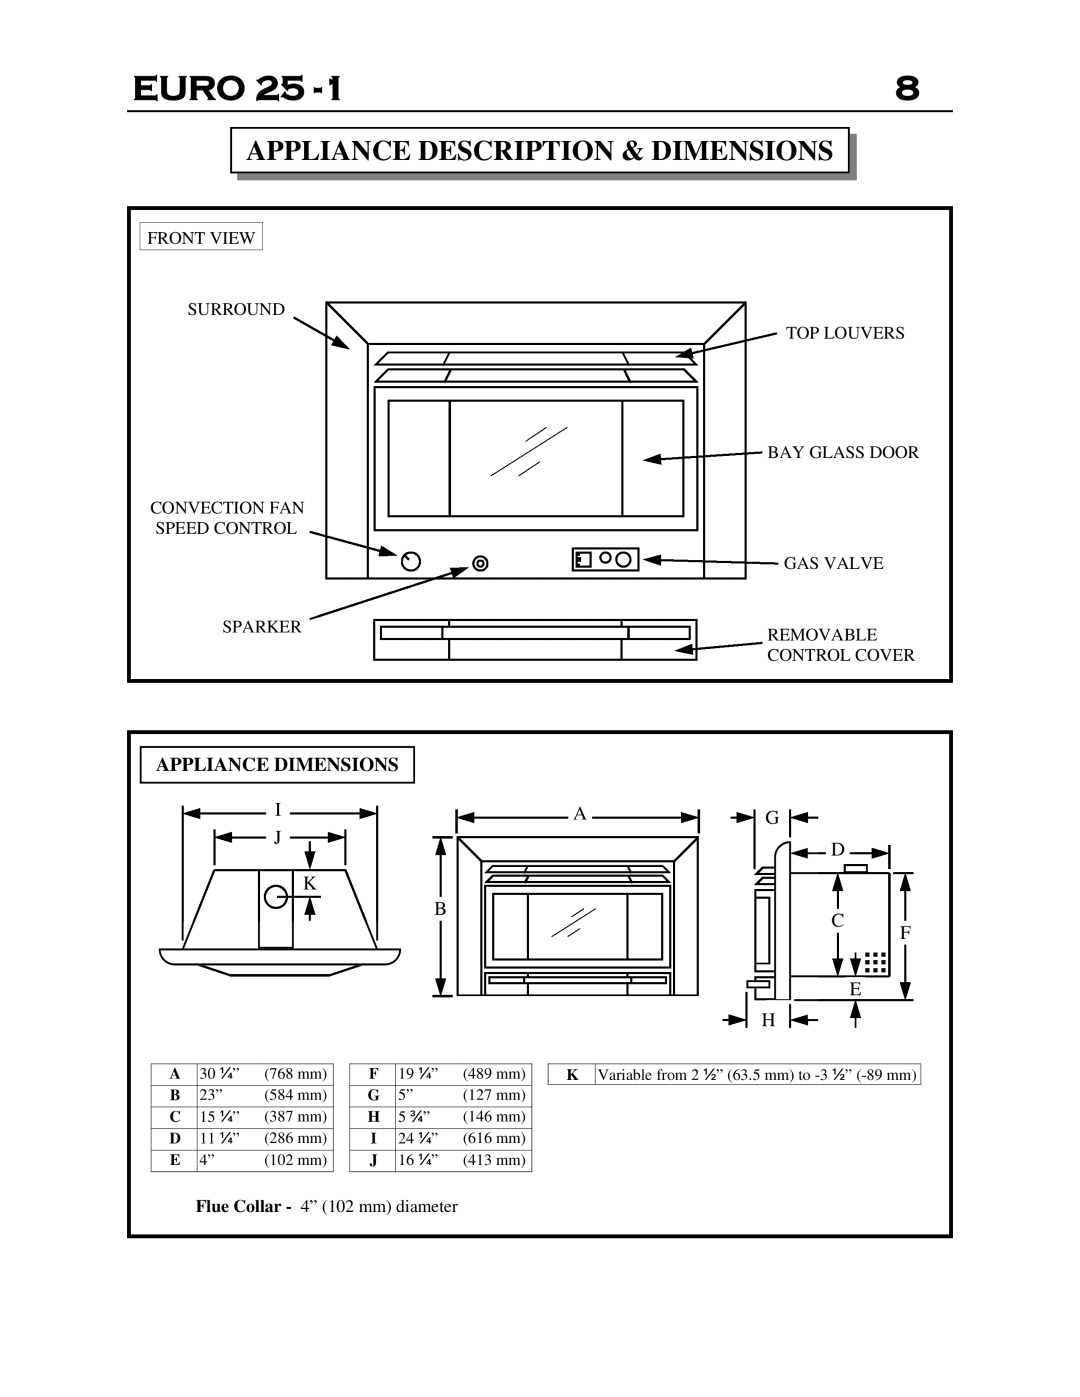 Delkin Devices EI - 25-1 manual Appliance Description & Dimensions, Euro 